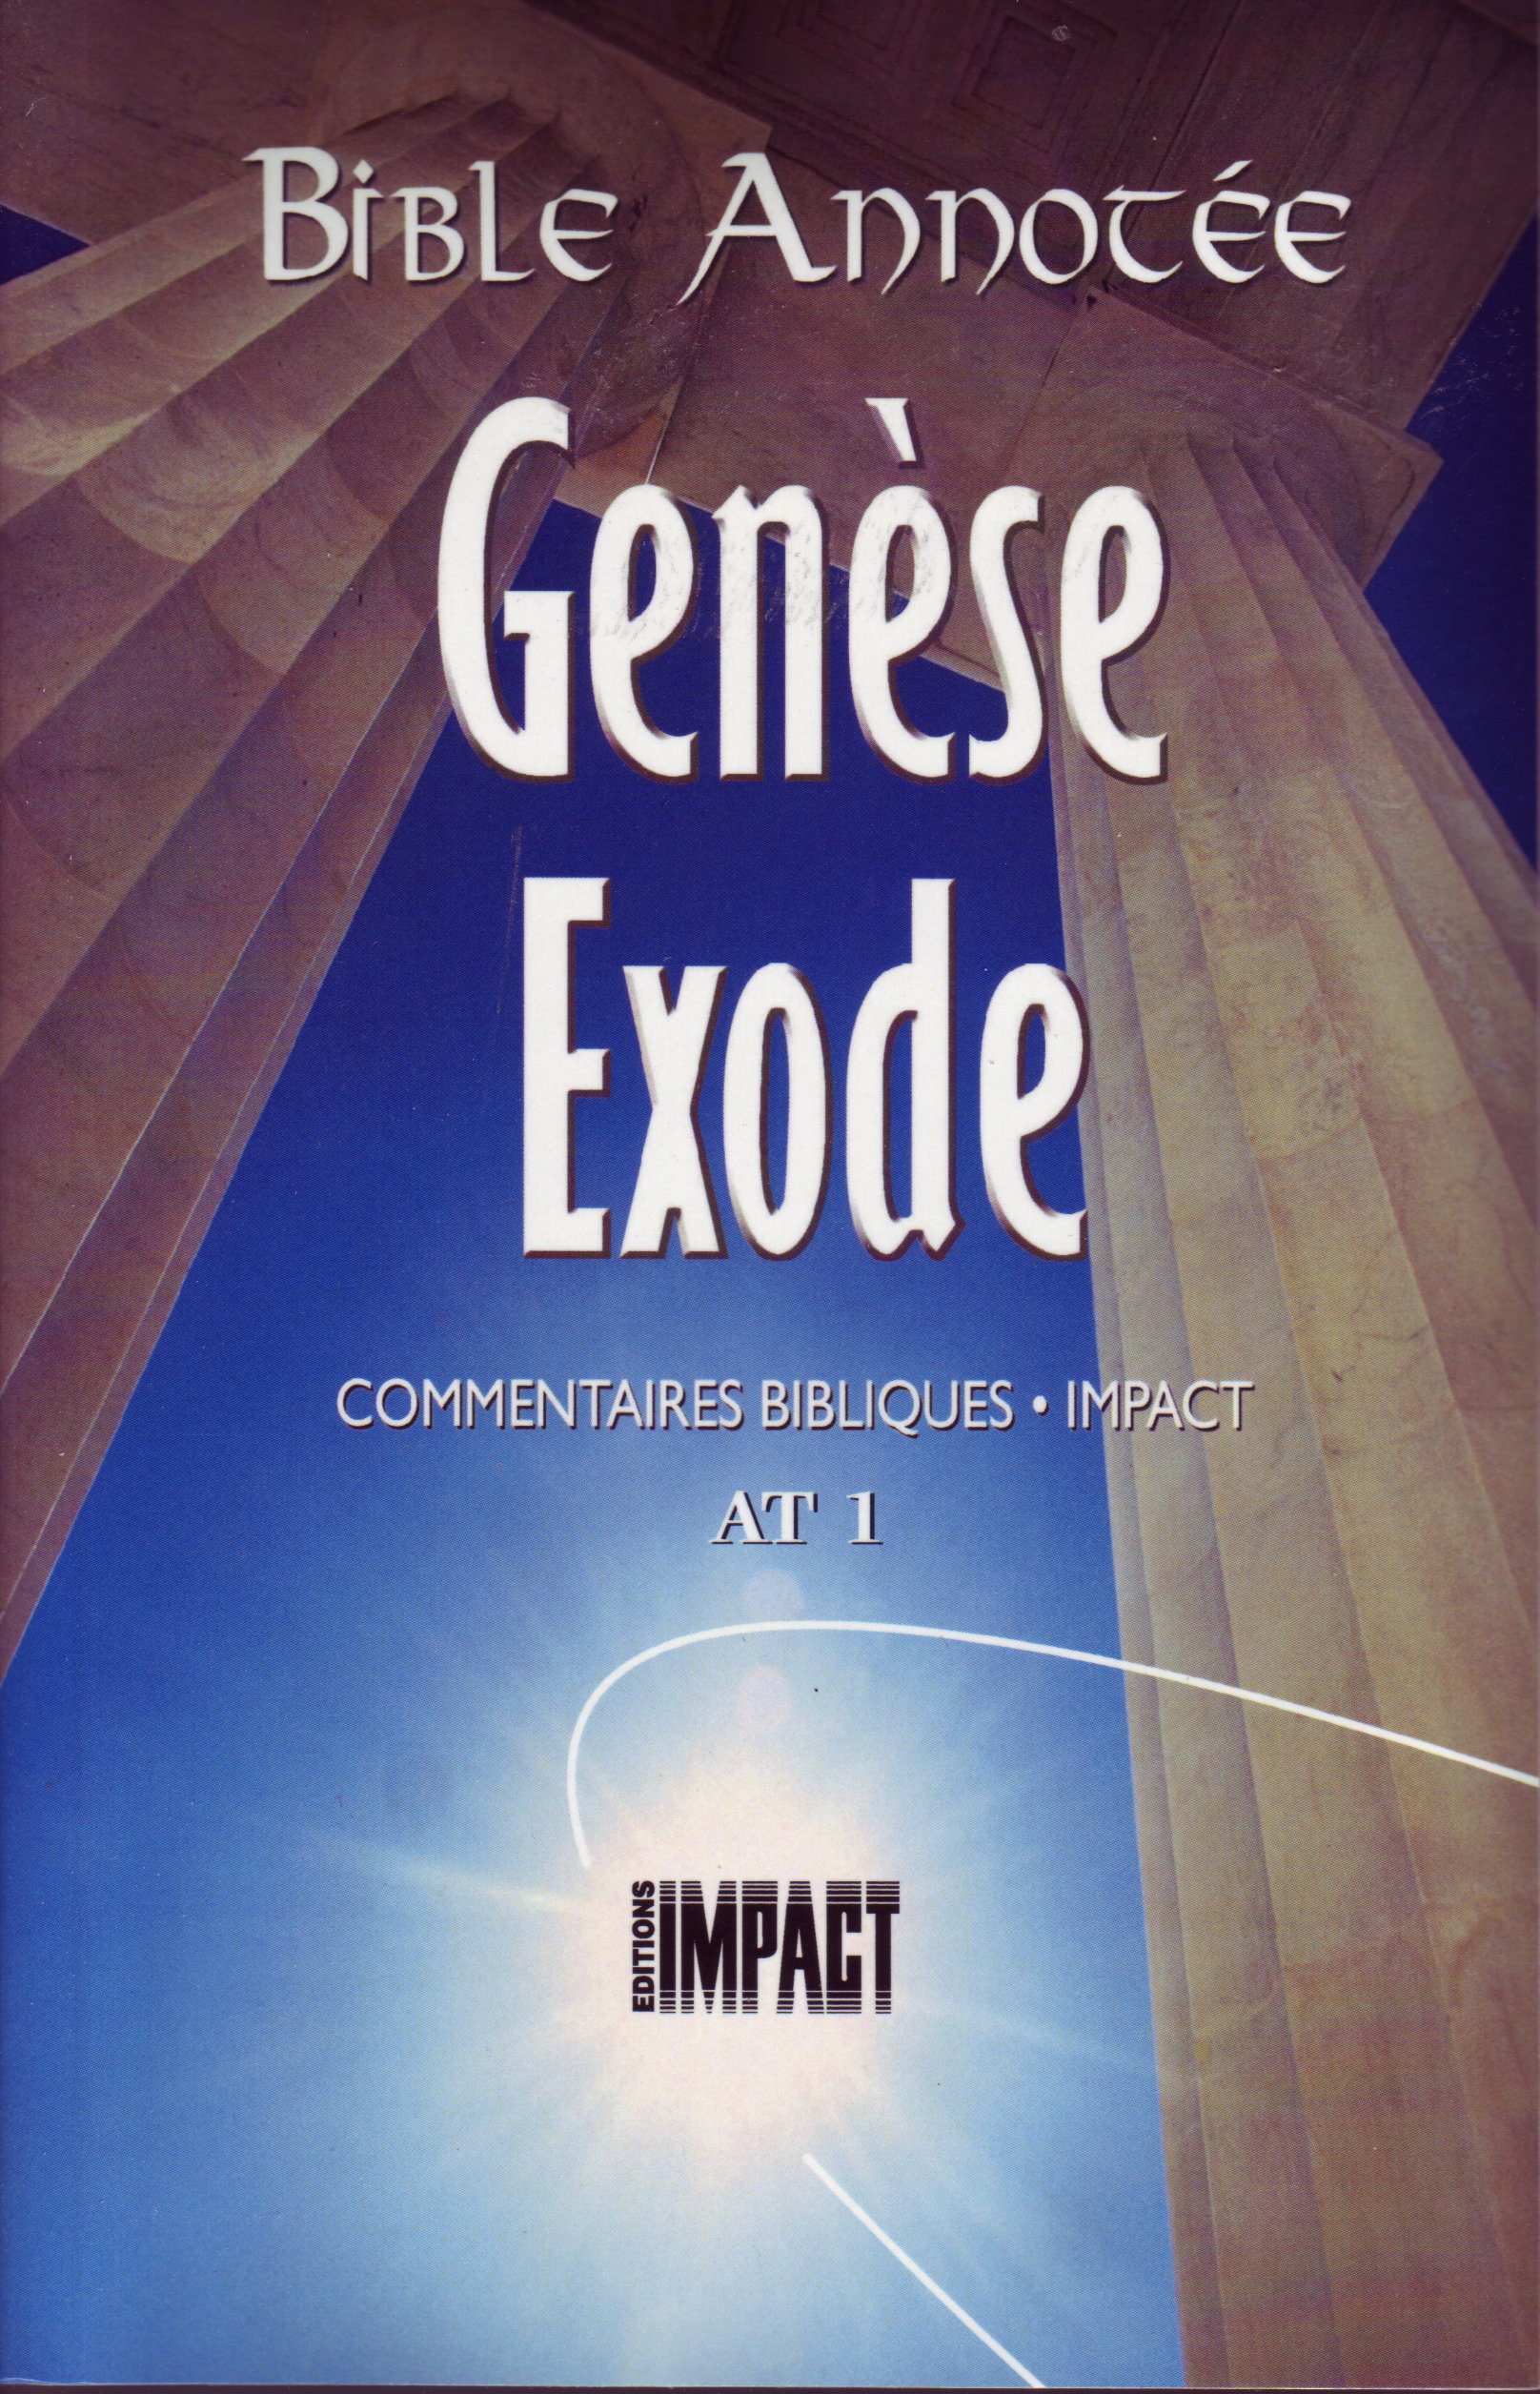 Bible Annotée - Genèse Exode (La) - Commentaires bibliques Impact AT 1 